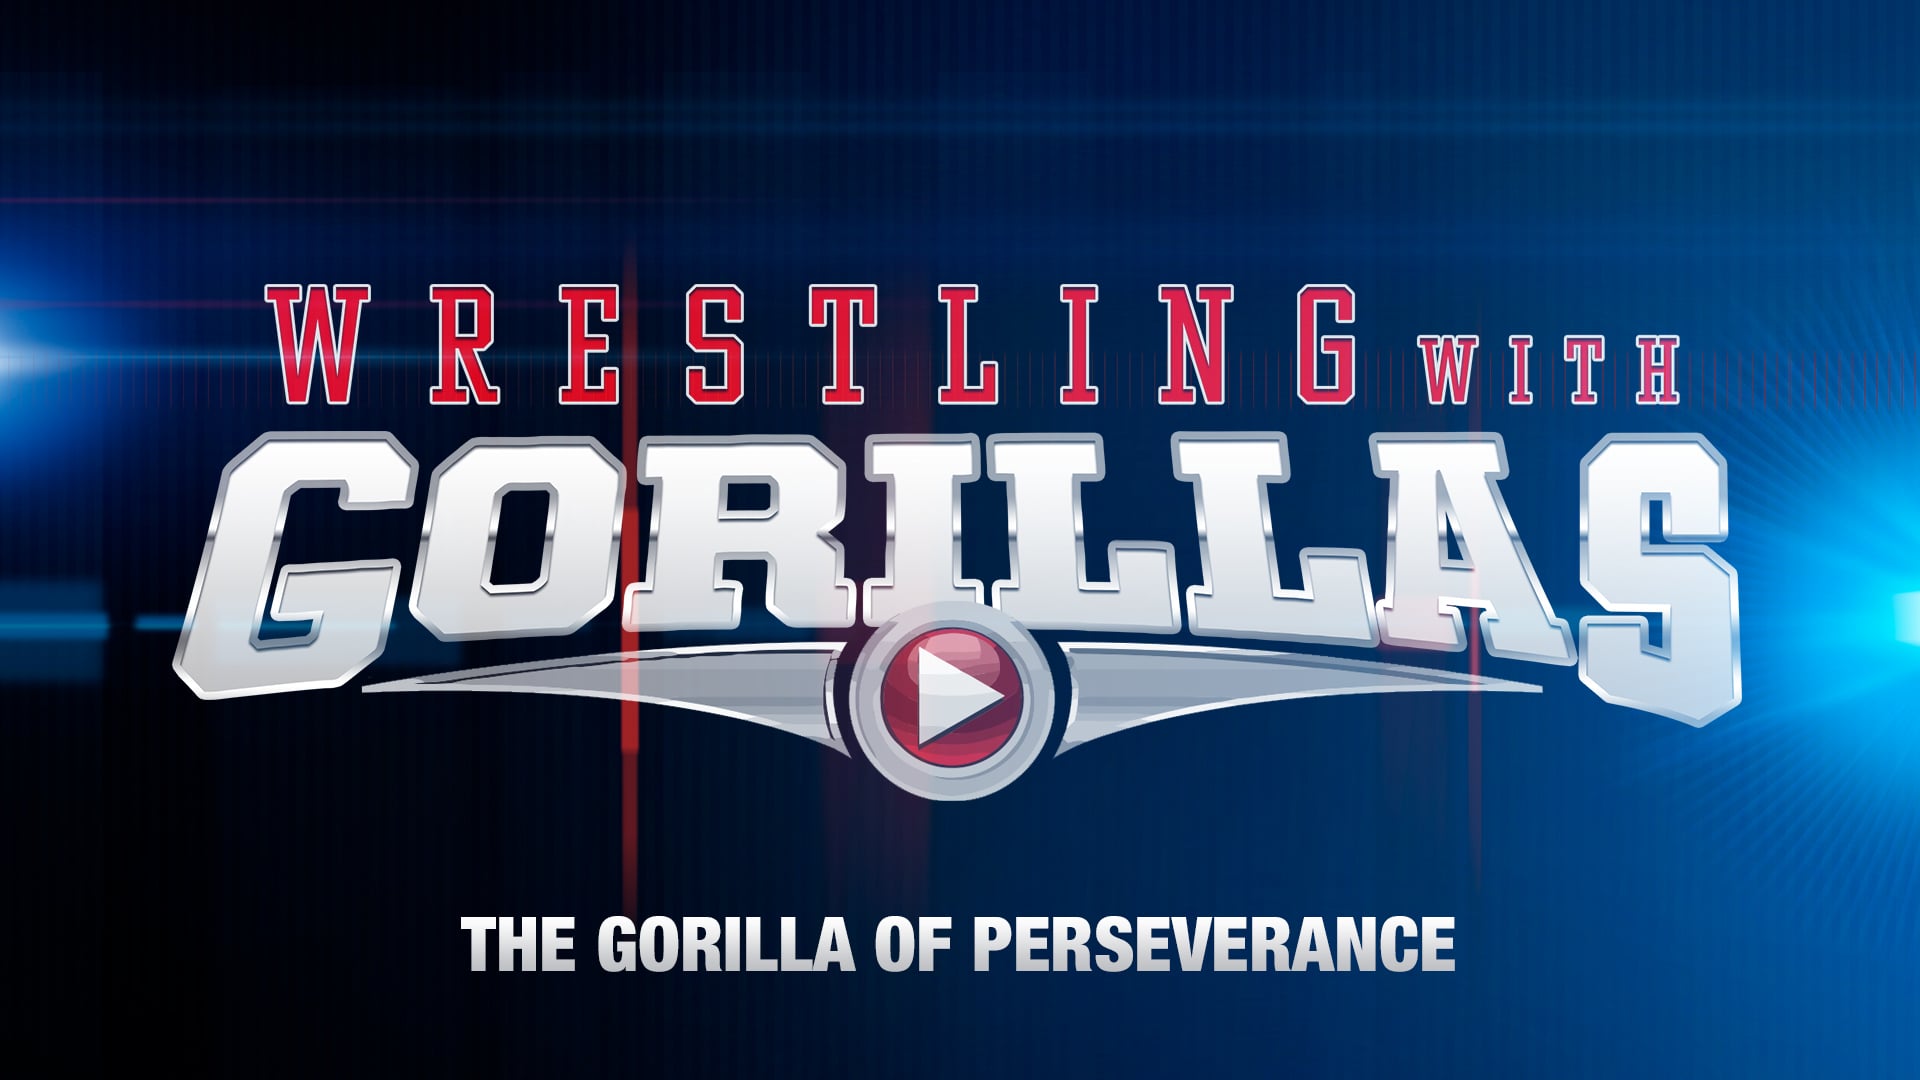 The Gorilla of Perseverance